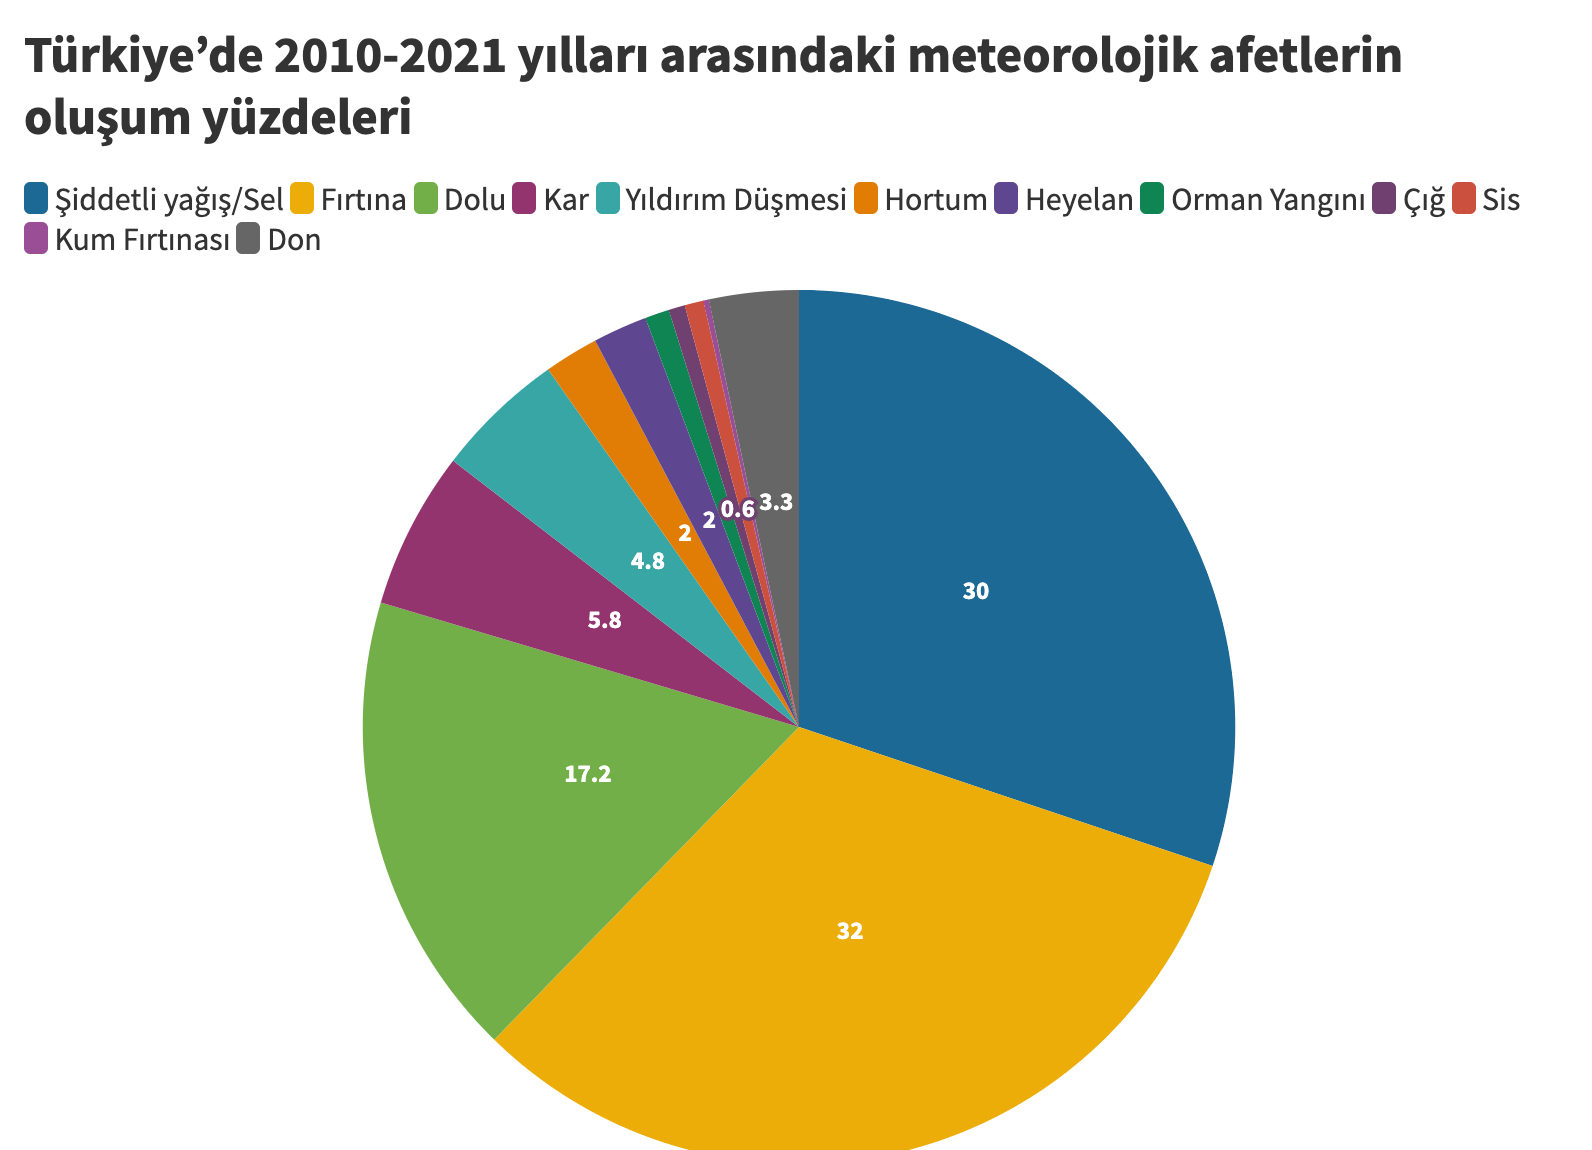 Türkiye'de 2010-2021 yılları arasındaki meteorolojik afetlerin oluşum yüzdeleri tablosu